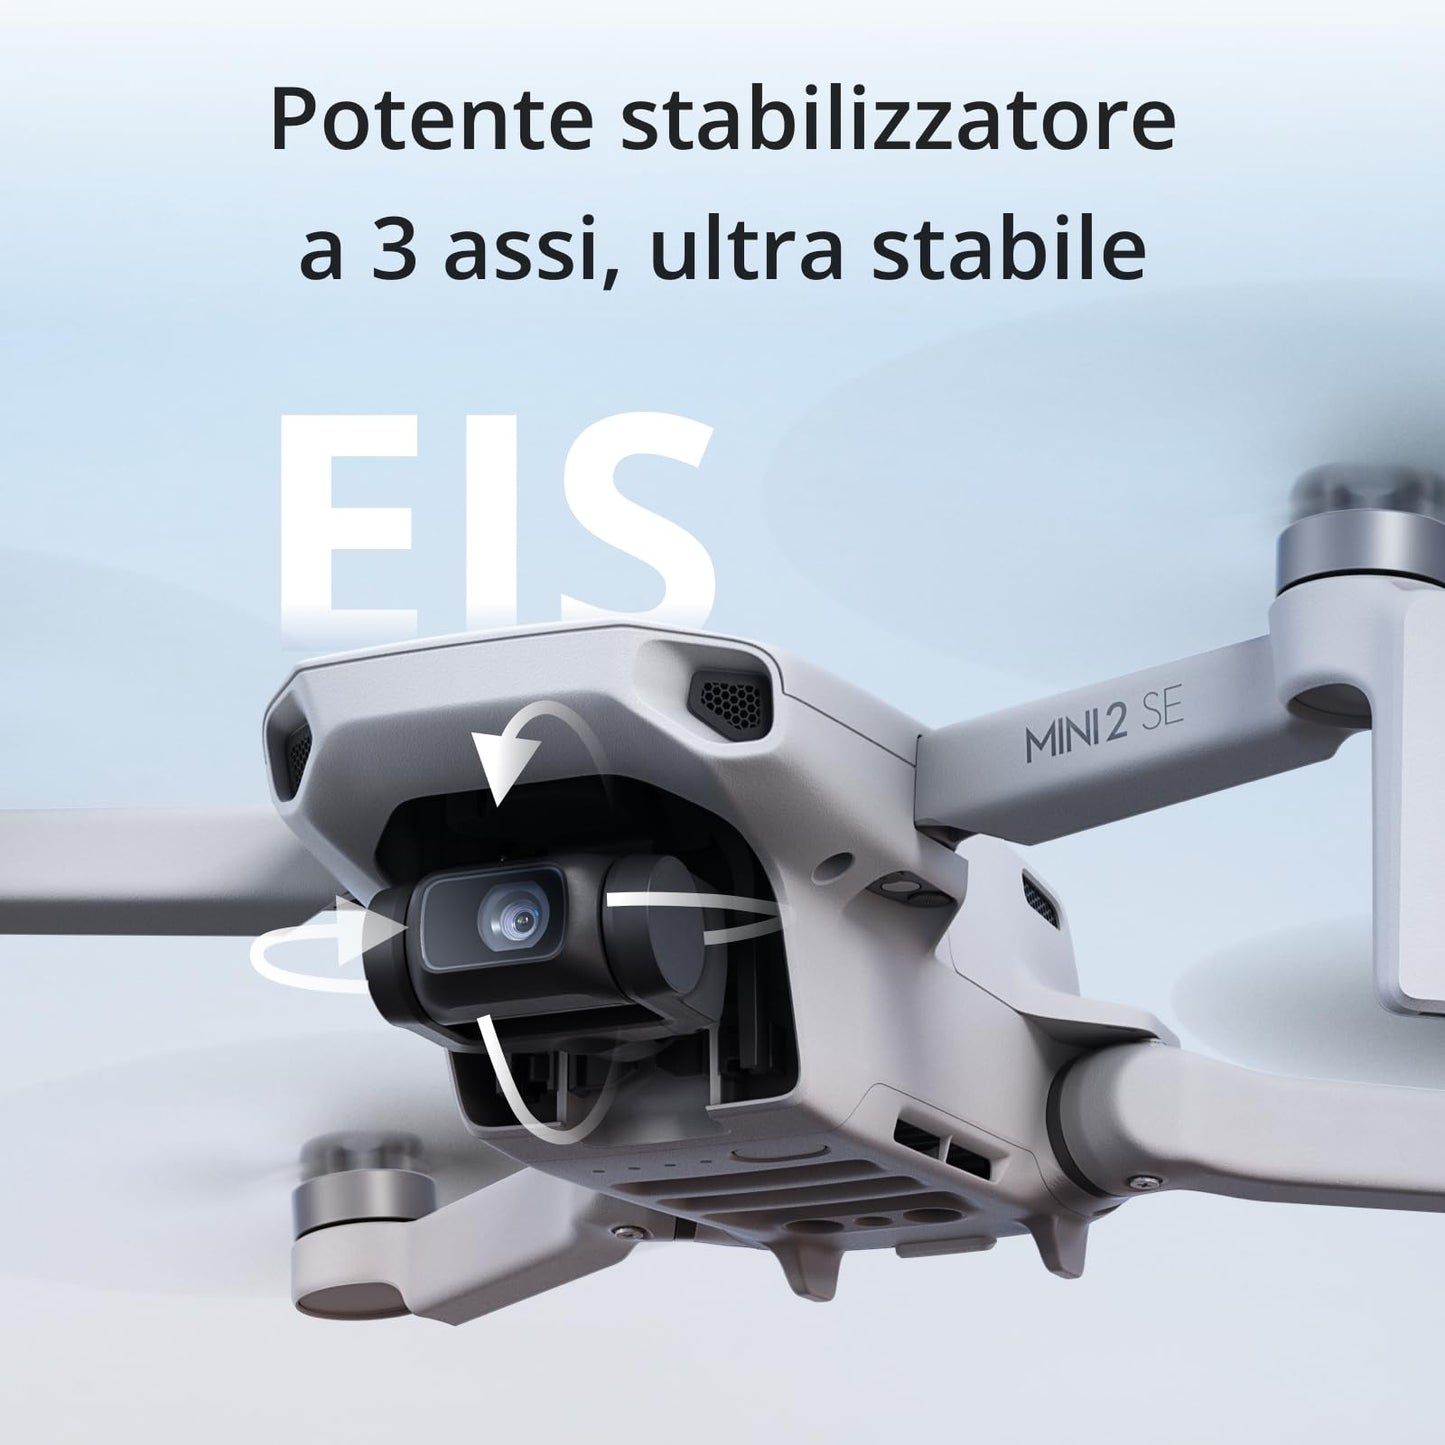 DJI Mini 2 SE, mini drone con fotocamera leggero e pieghevole, video in 2.7K, modalità intelligenti, fino a 10 km